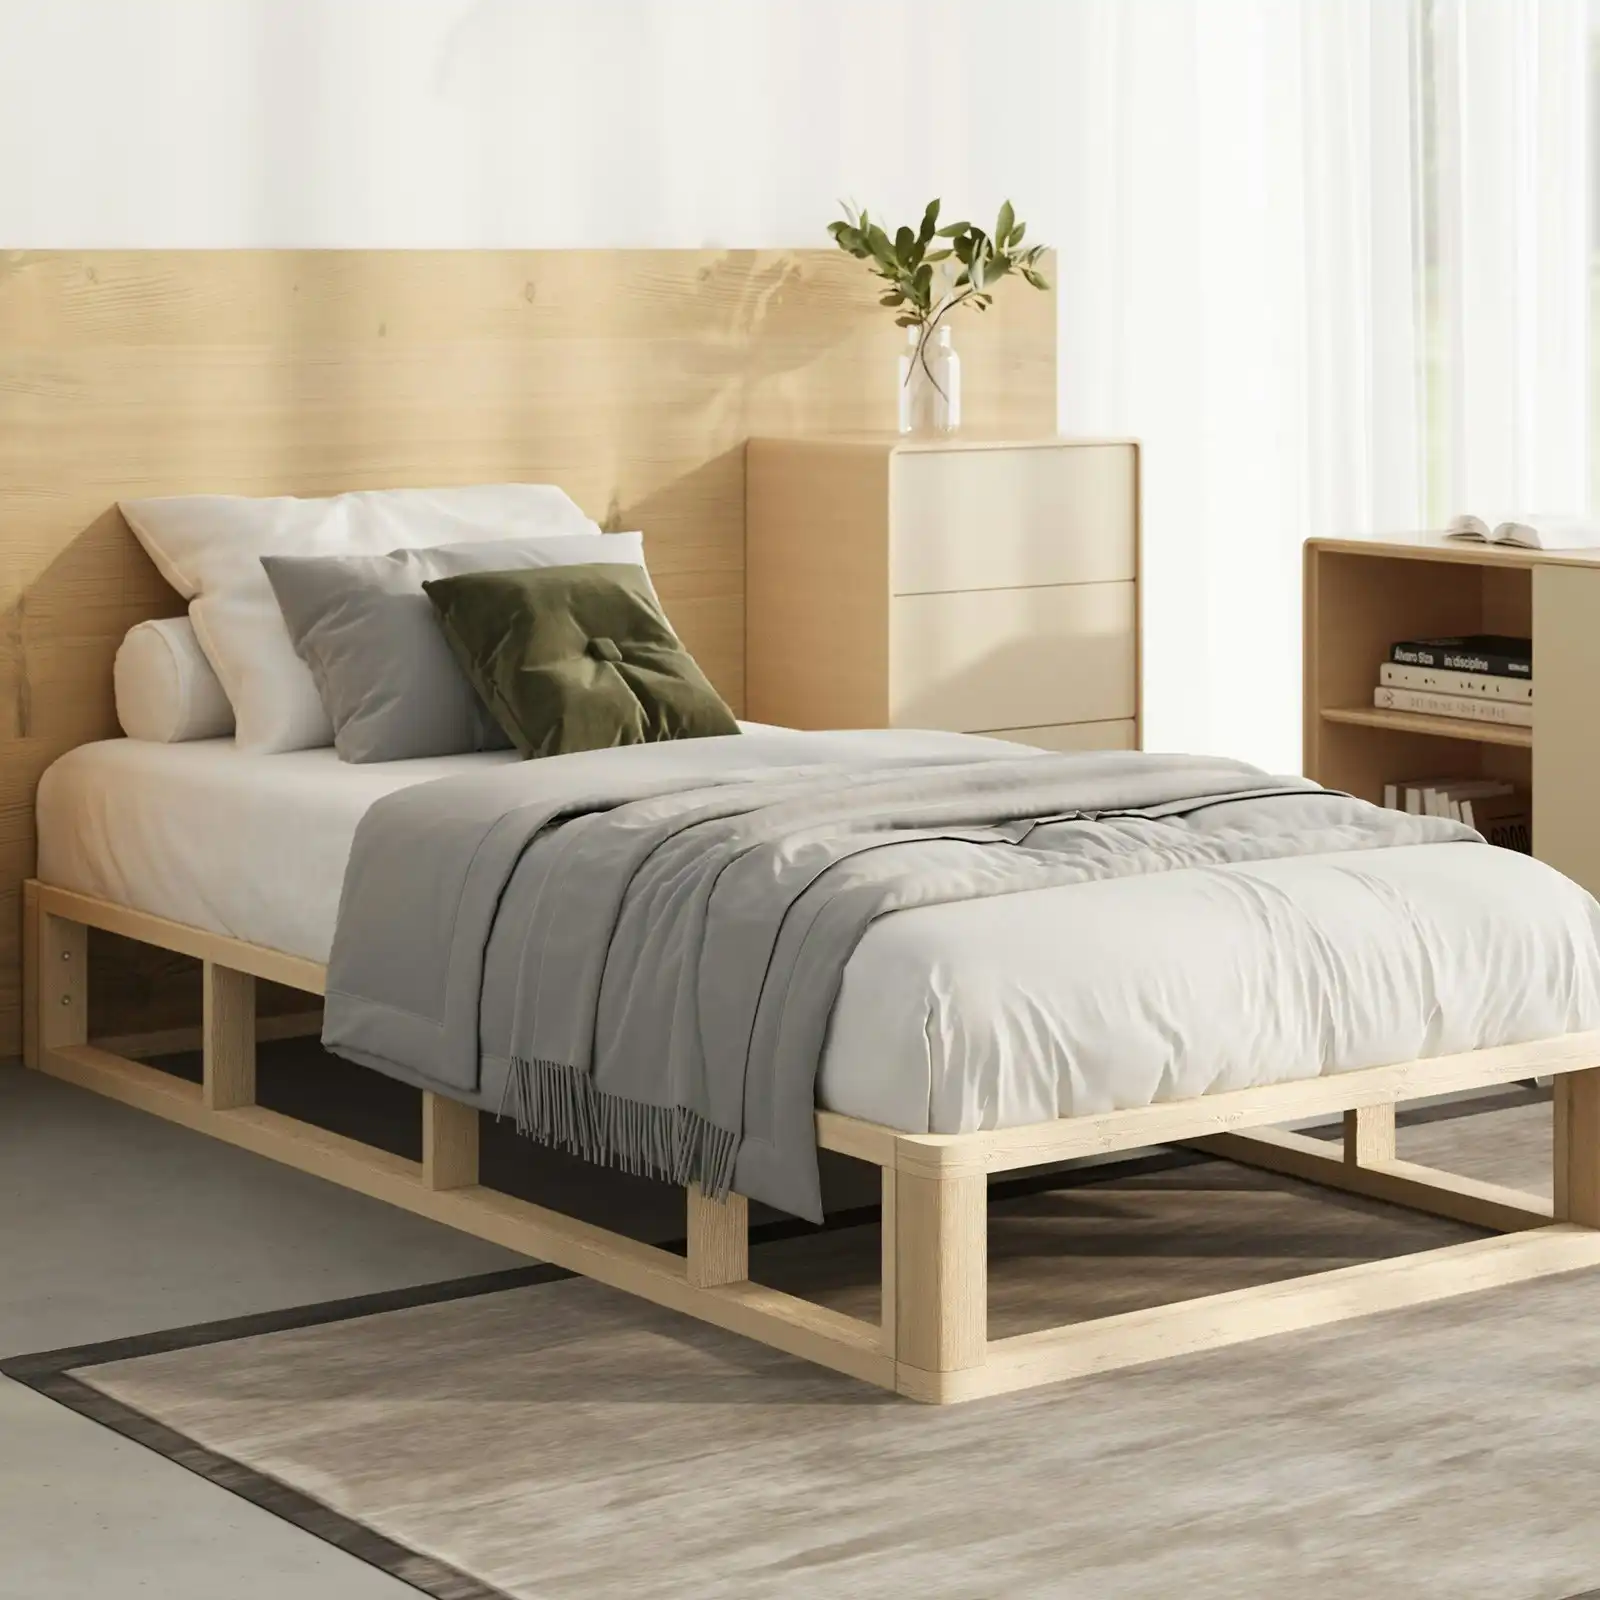 Oikiture Bed Frame Single Size Bed Base Wooden Platform Cage-like Base